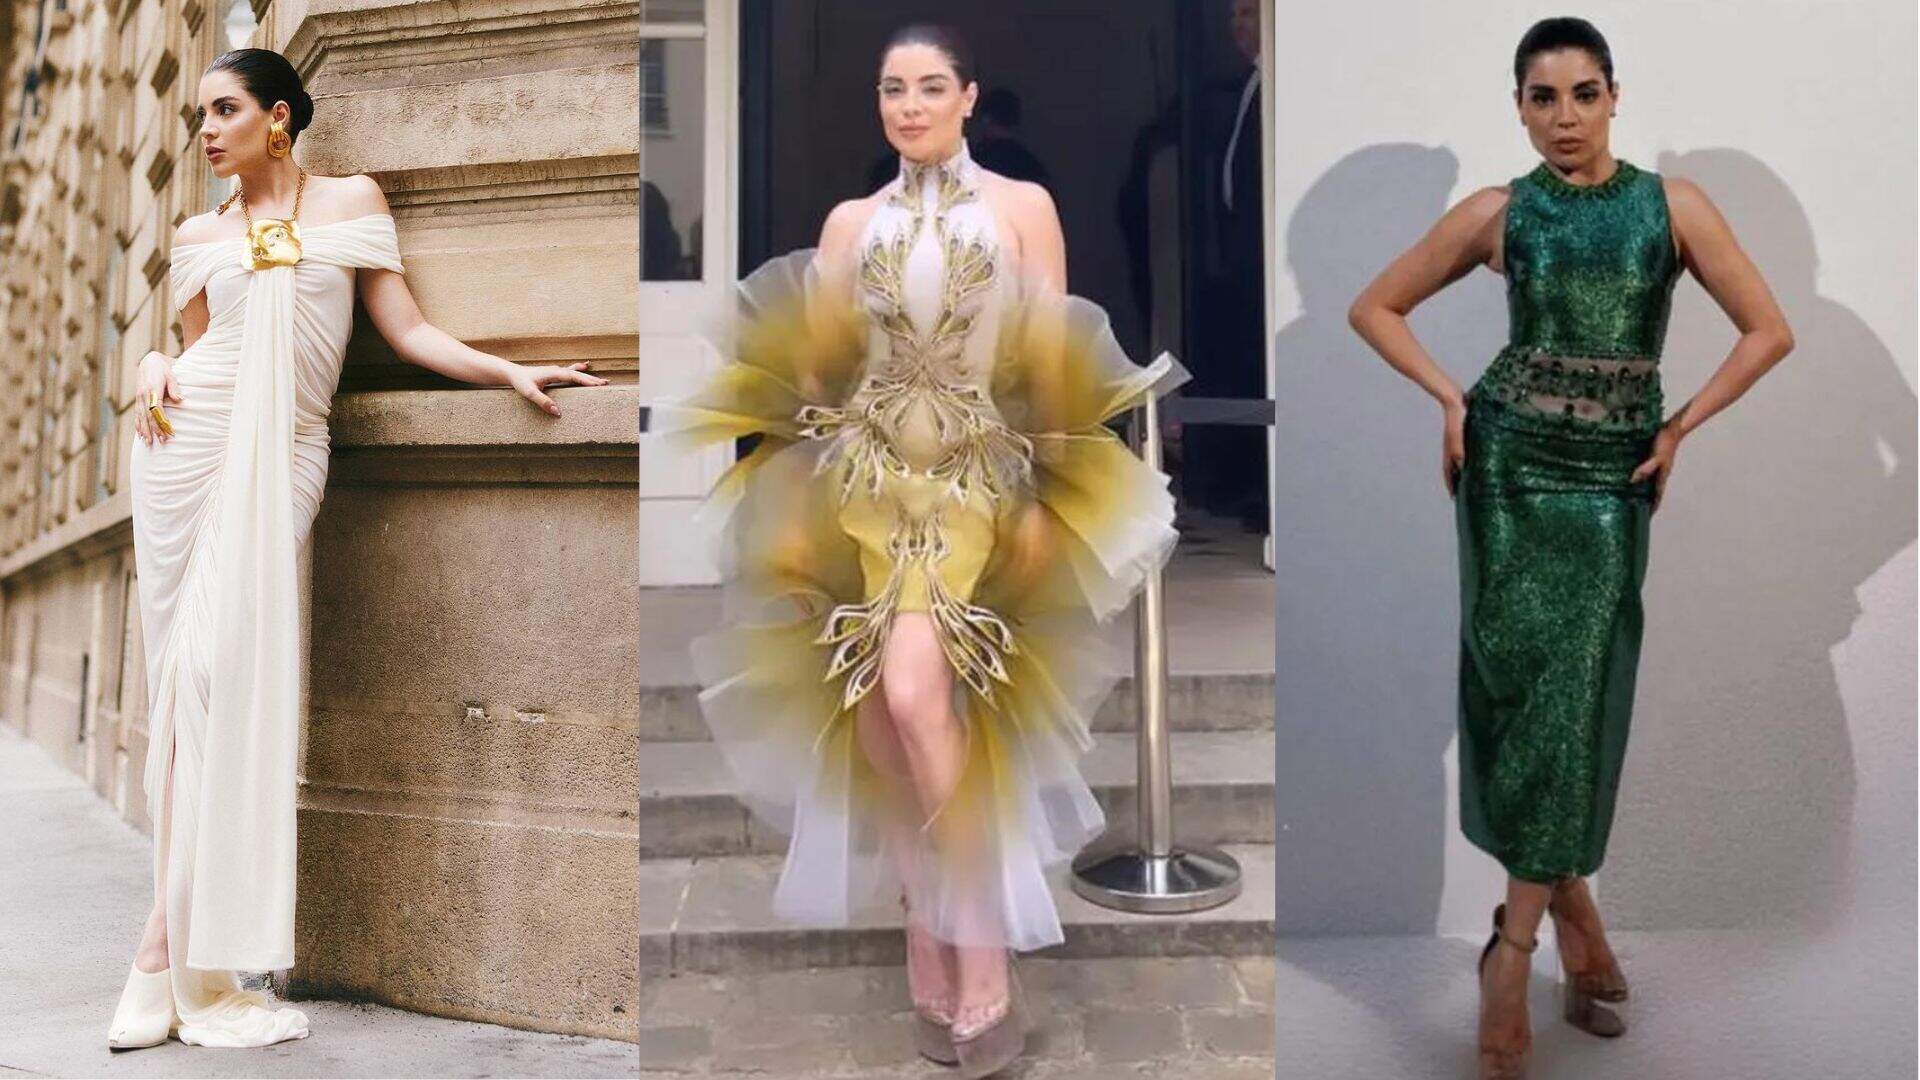 Maratona fashion! Gkay elege três looks diferentes para usar no mesmo dia e acompanhar a Semana de Moda de Paris - Metropolitana FM